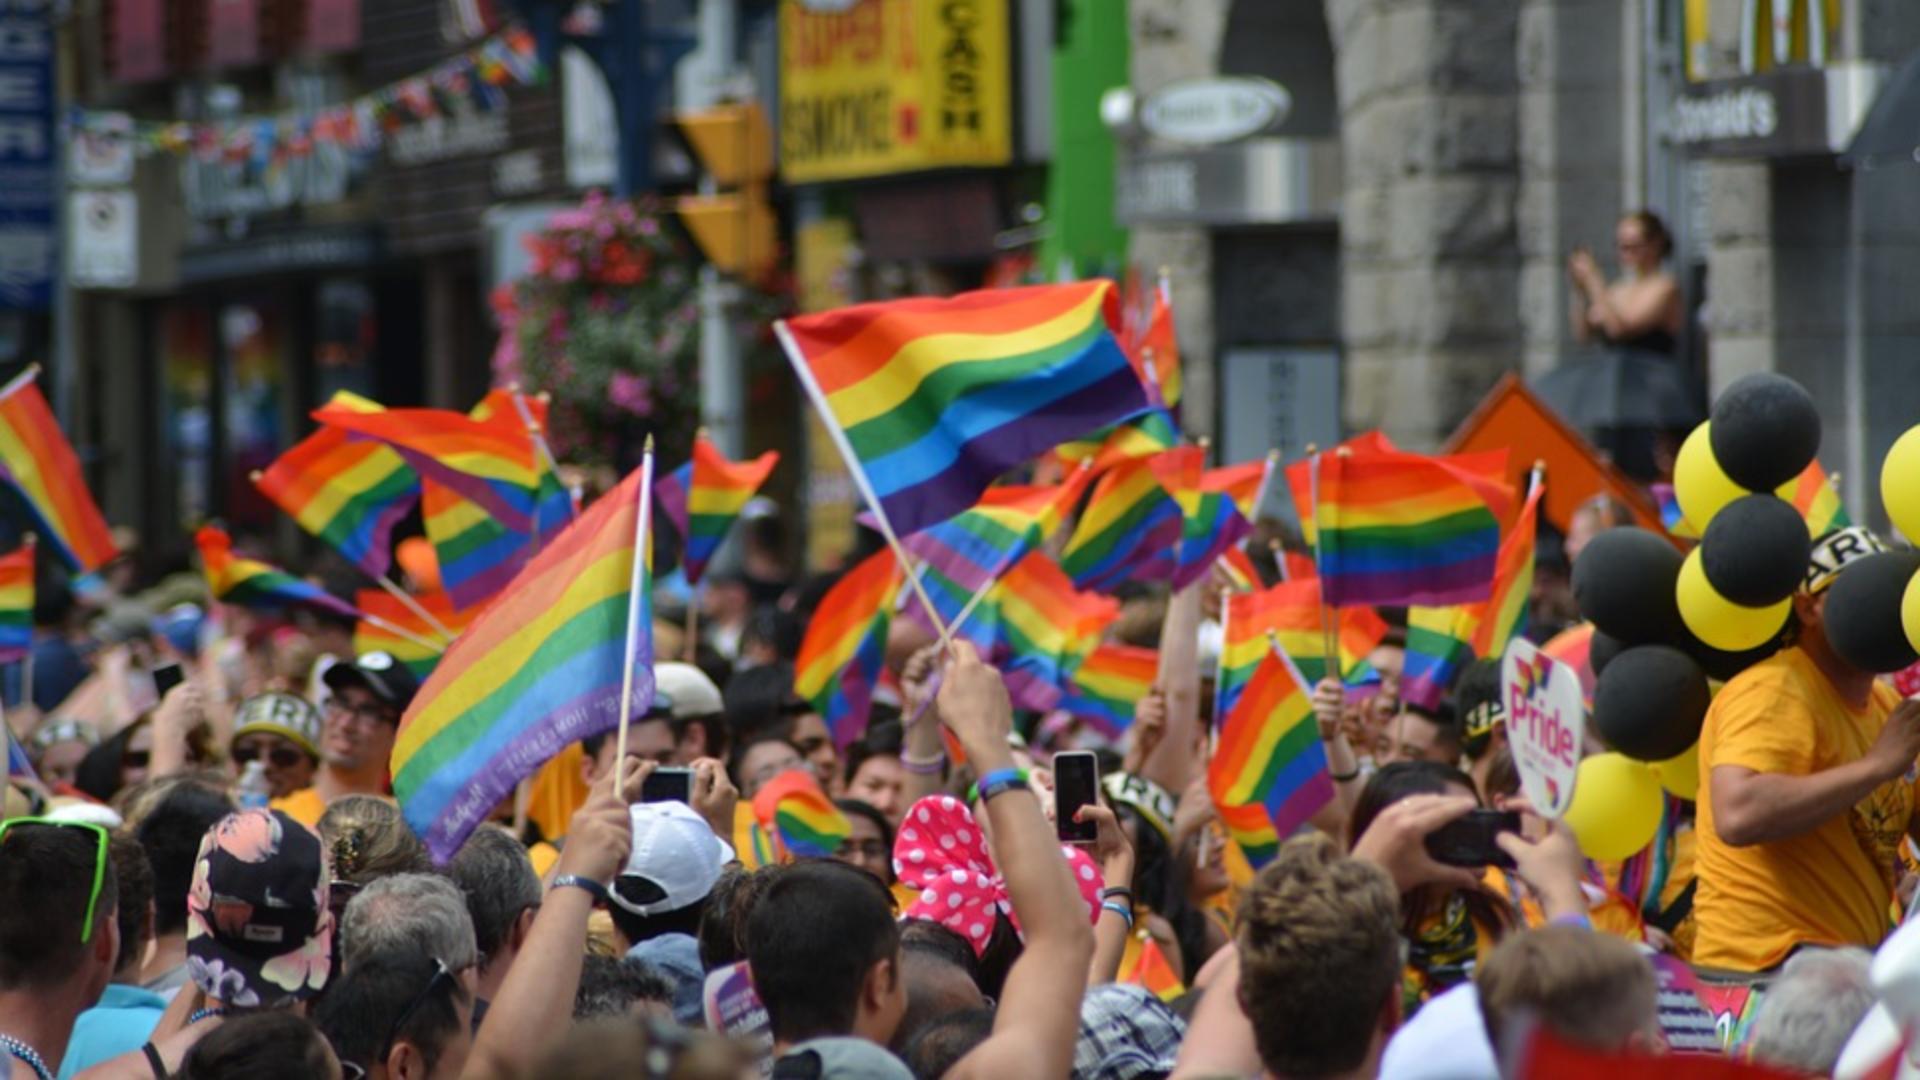 Trei români din Italia ademeneau tineri gay pe un site de dating, apoi îi jefuiau și îi băteau. Cel puțin 11 victime au fost hărțuite 